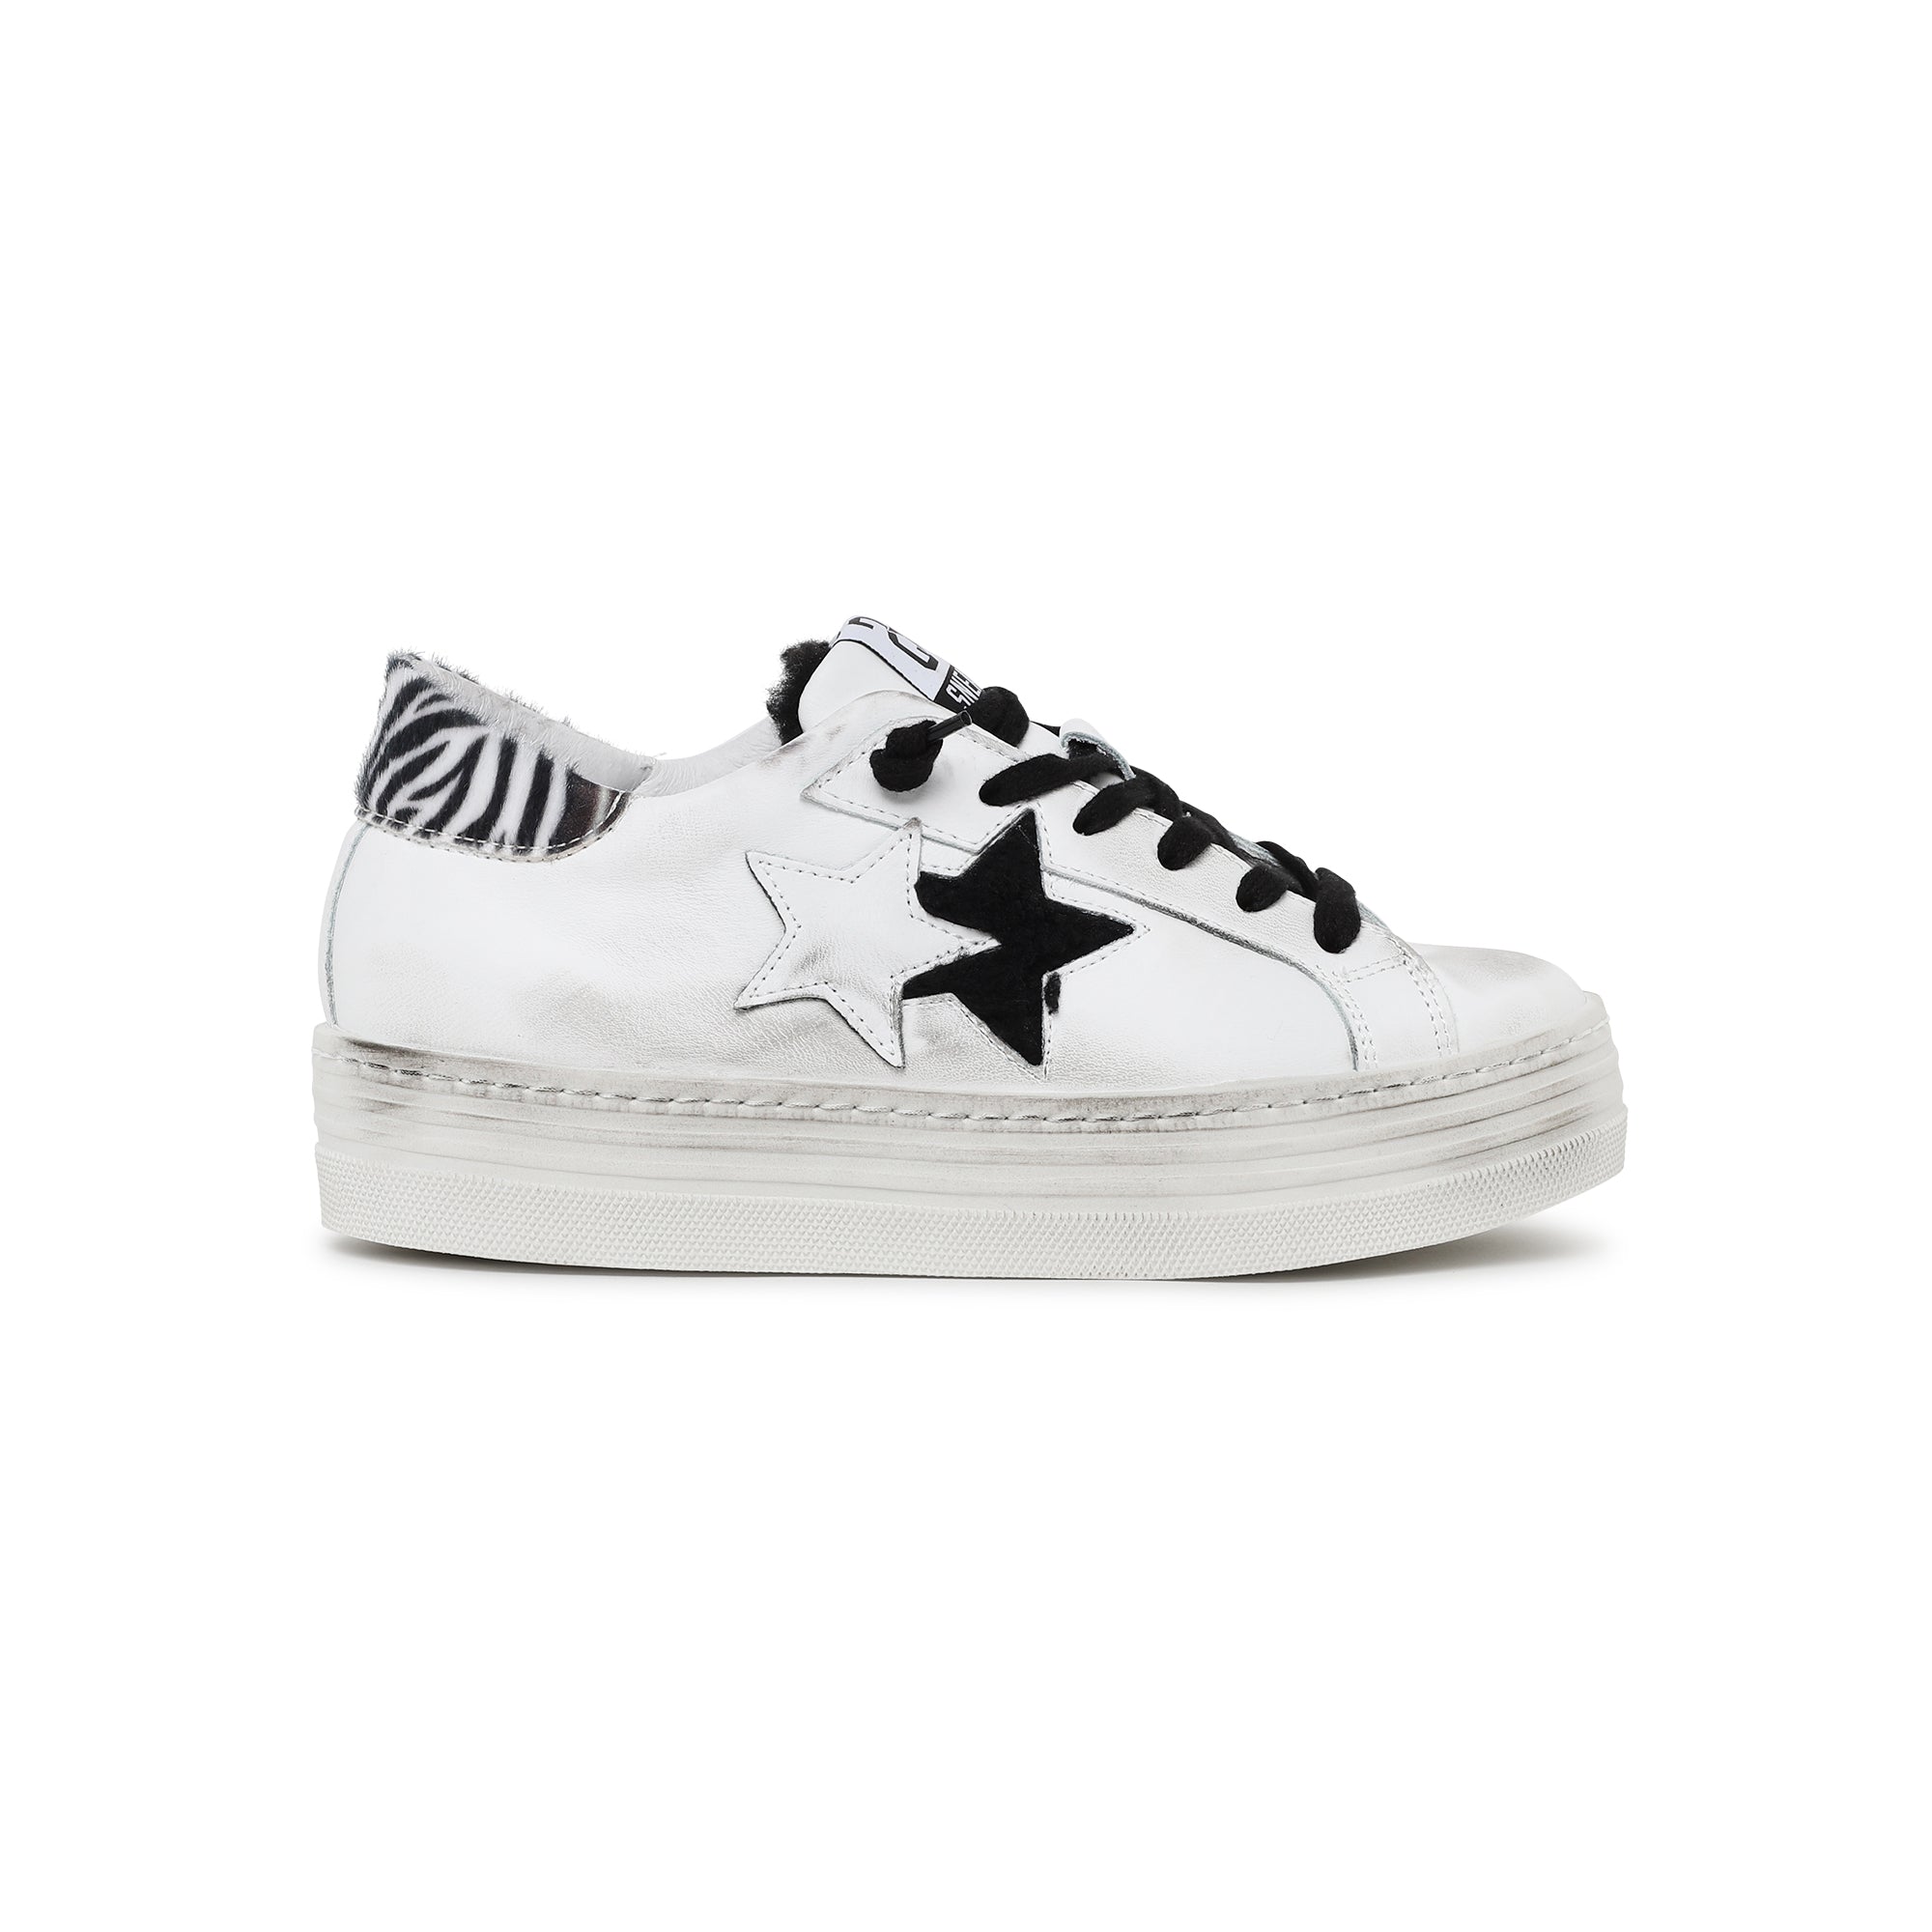 Sneaker effetto used con suola rialzata, parte posteriore con pelo zebrato con stellina pelo nero -  white-black donna 